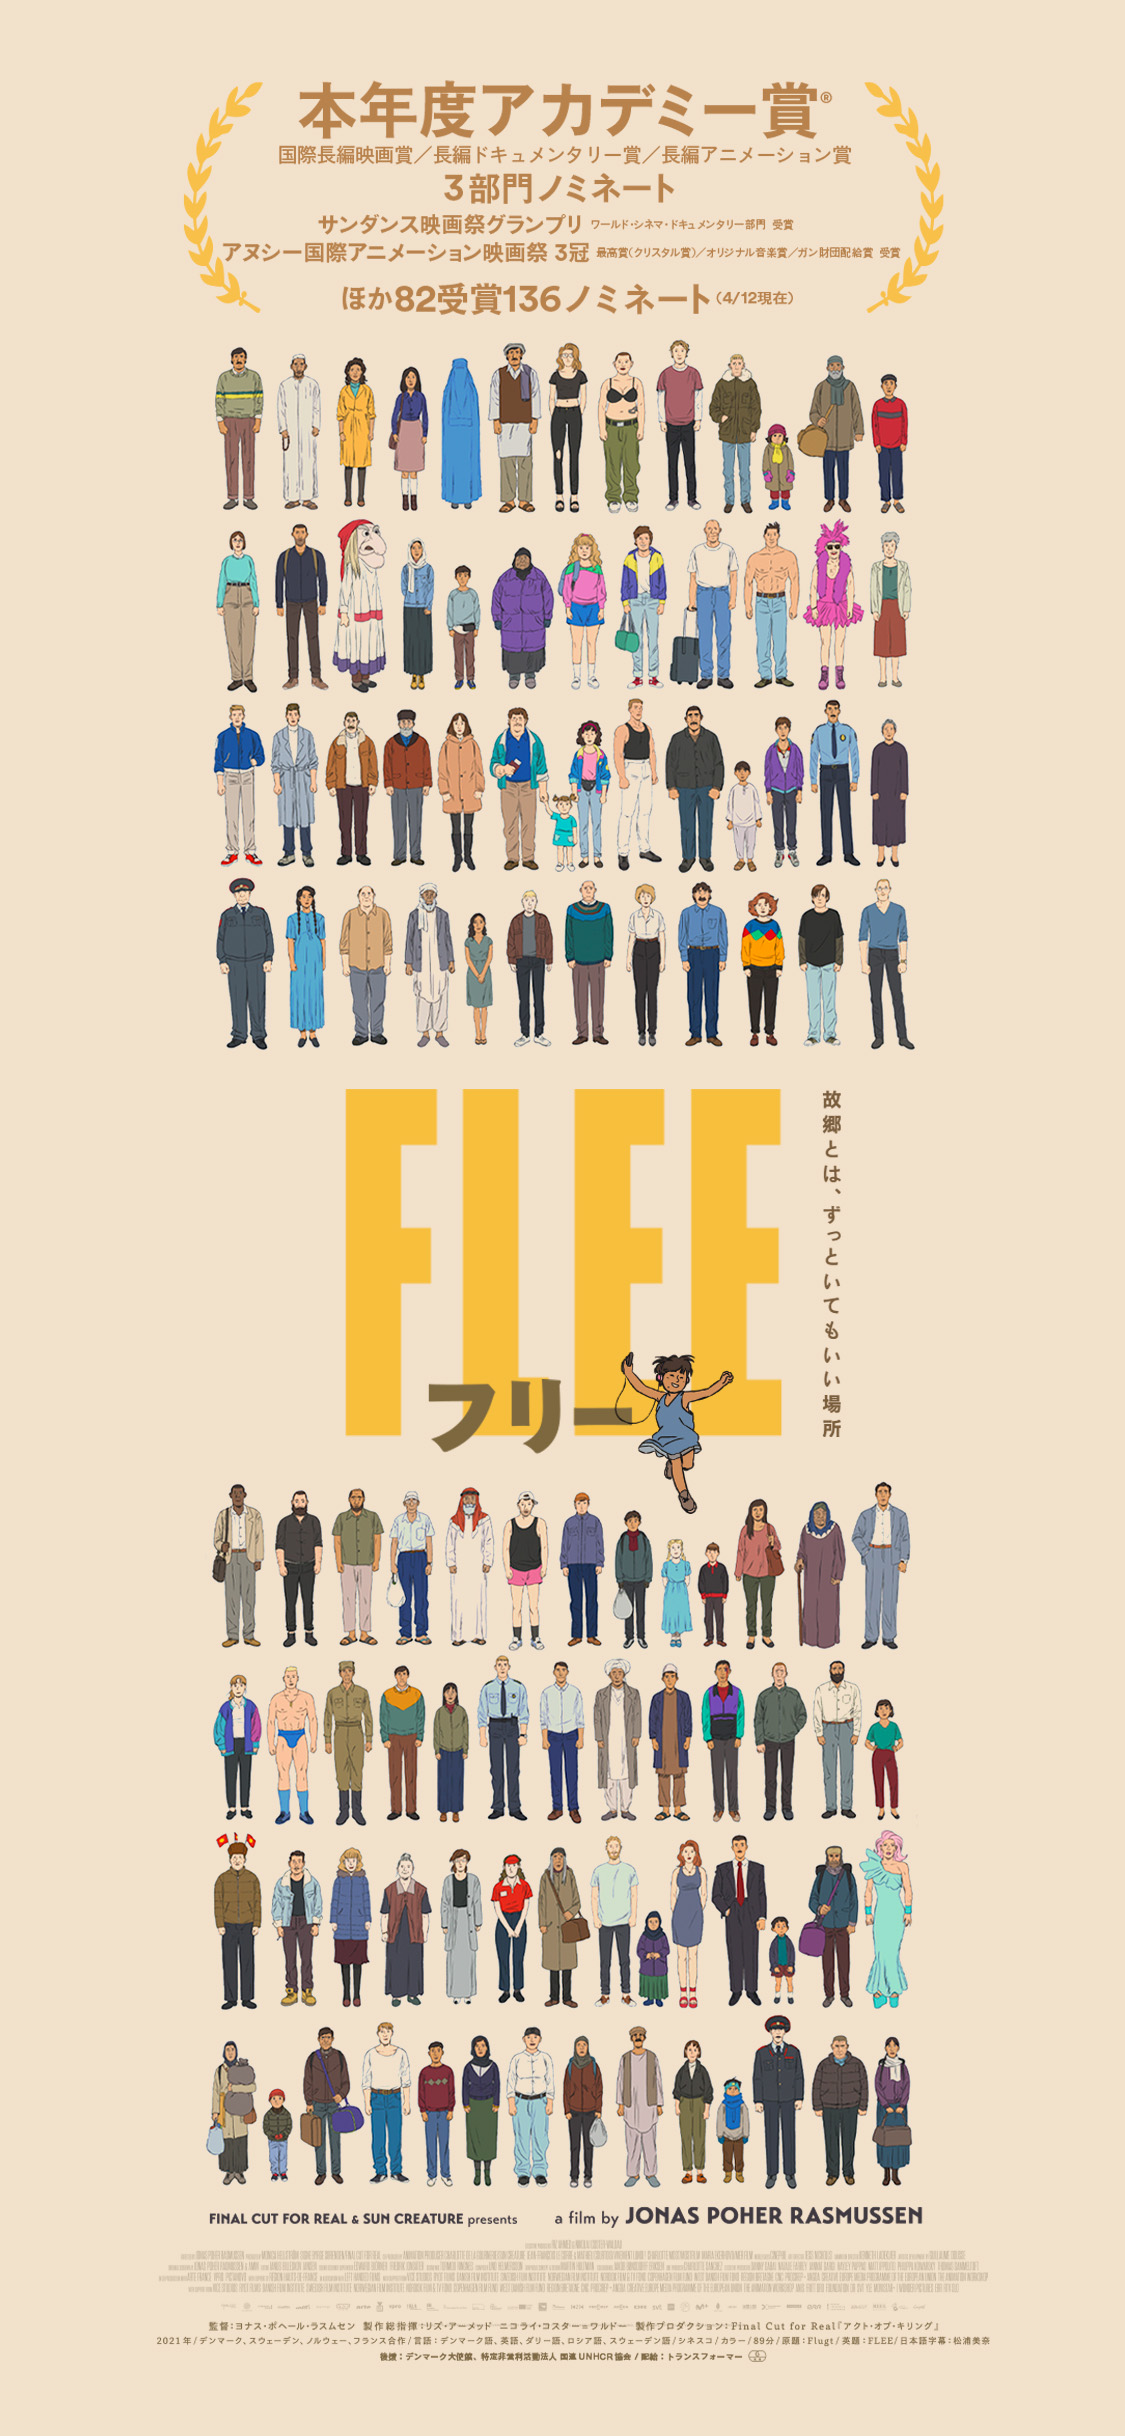 映画 Flee フリー 公式サイト 6 10 金 ロードショー